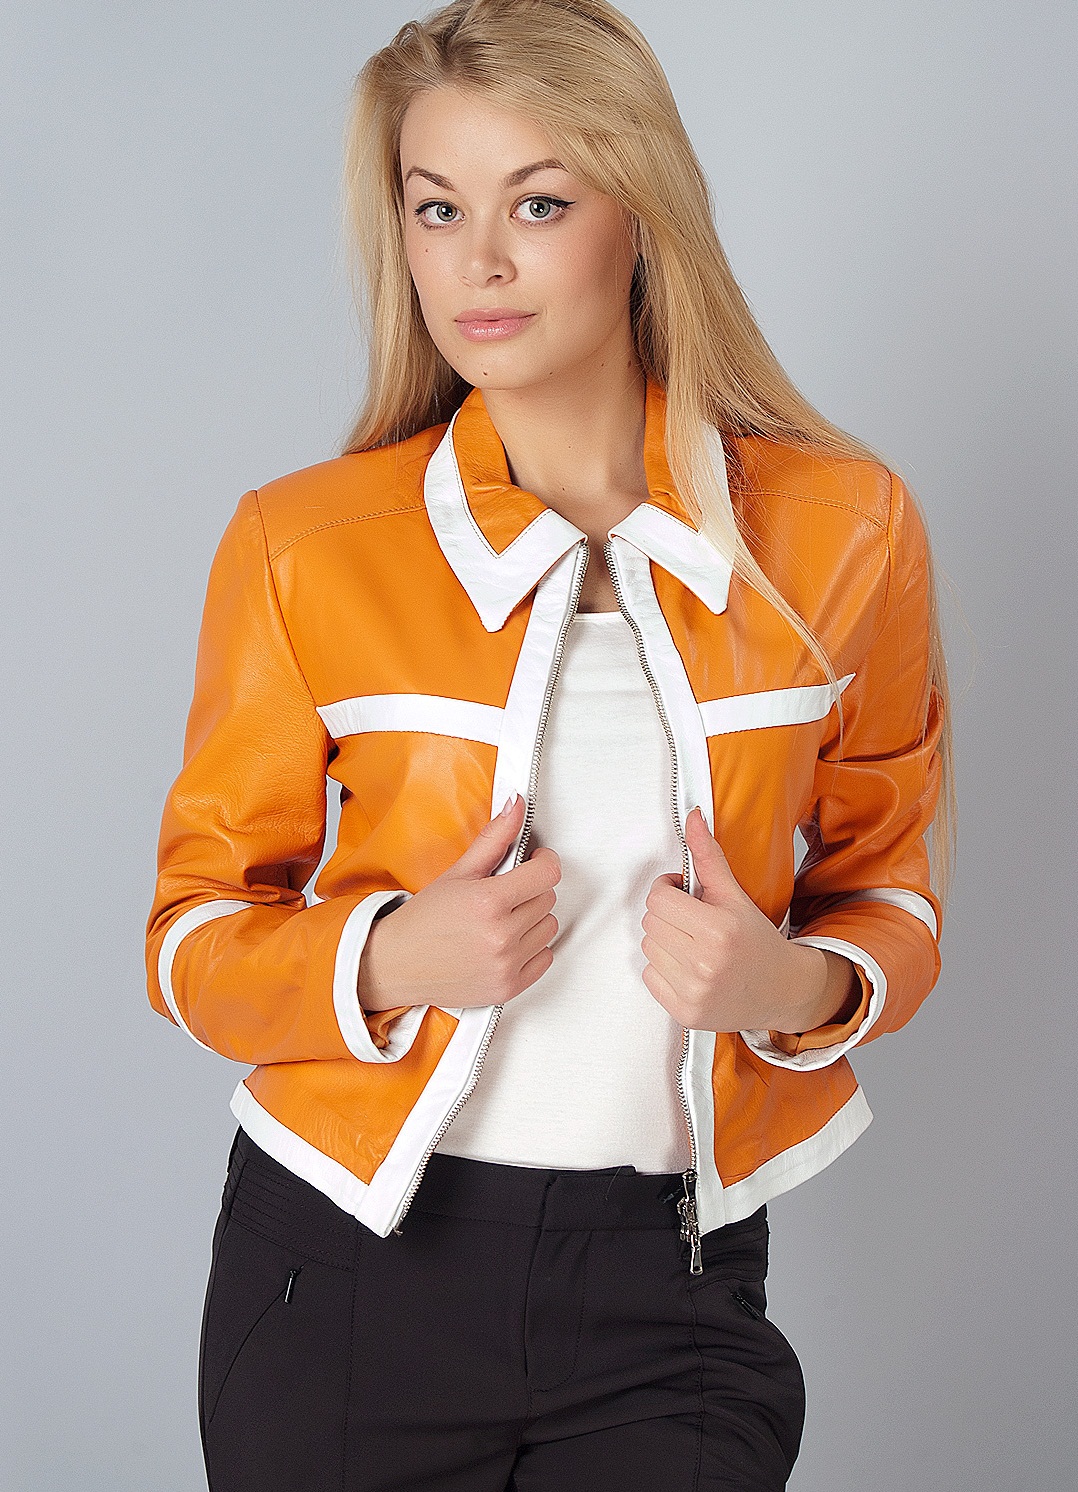 Девушка в оранжевой куртке